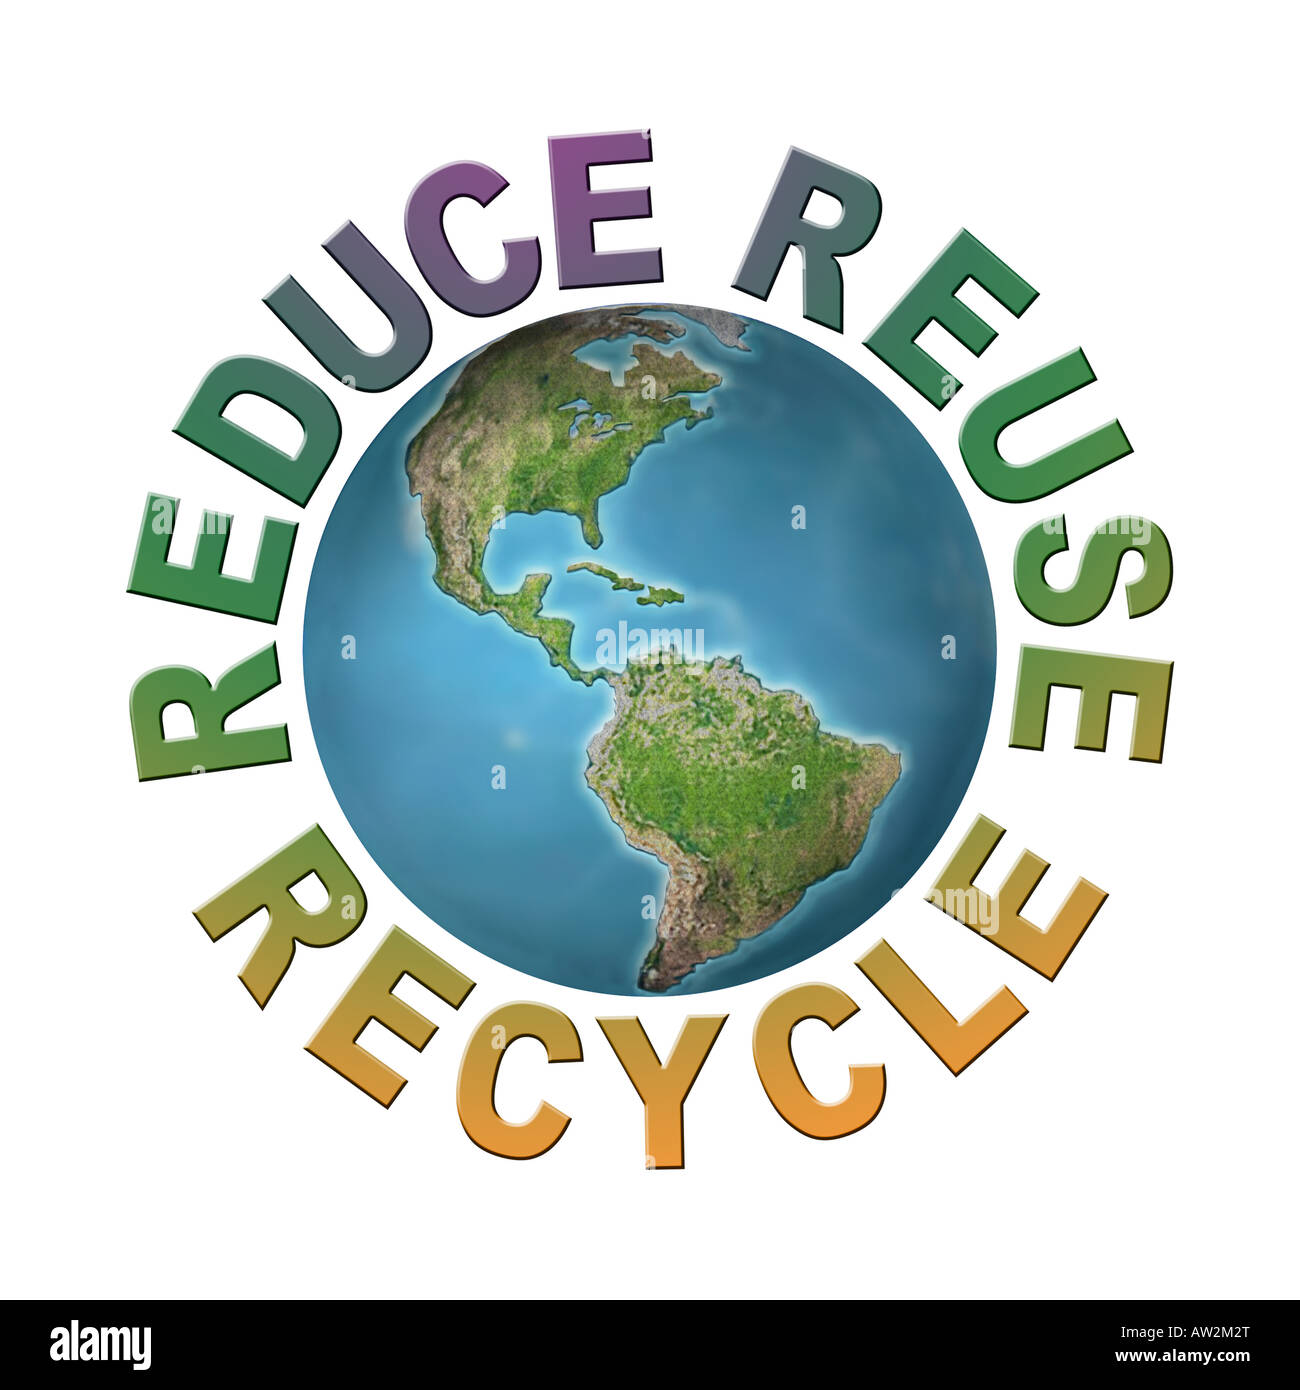 Globo terráqueo rodeado por tres frases ecológicas - reducir-reciclar-reutilizar  - planeta limpio concepto Fotografía de stock - Alamy